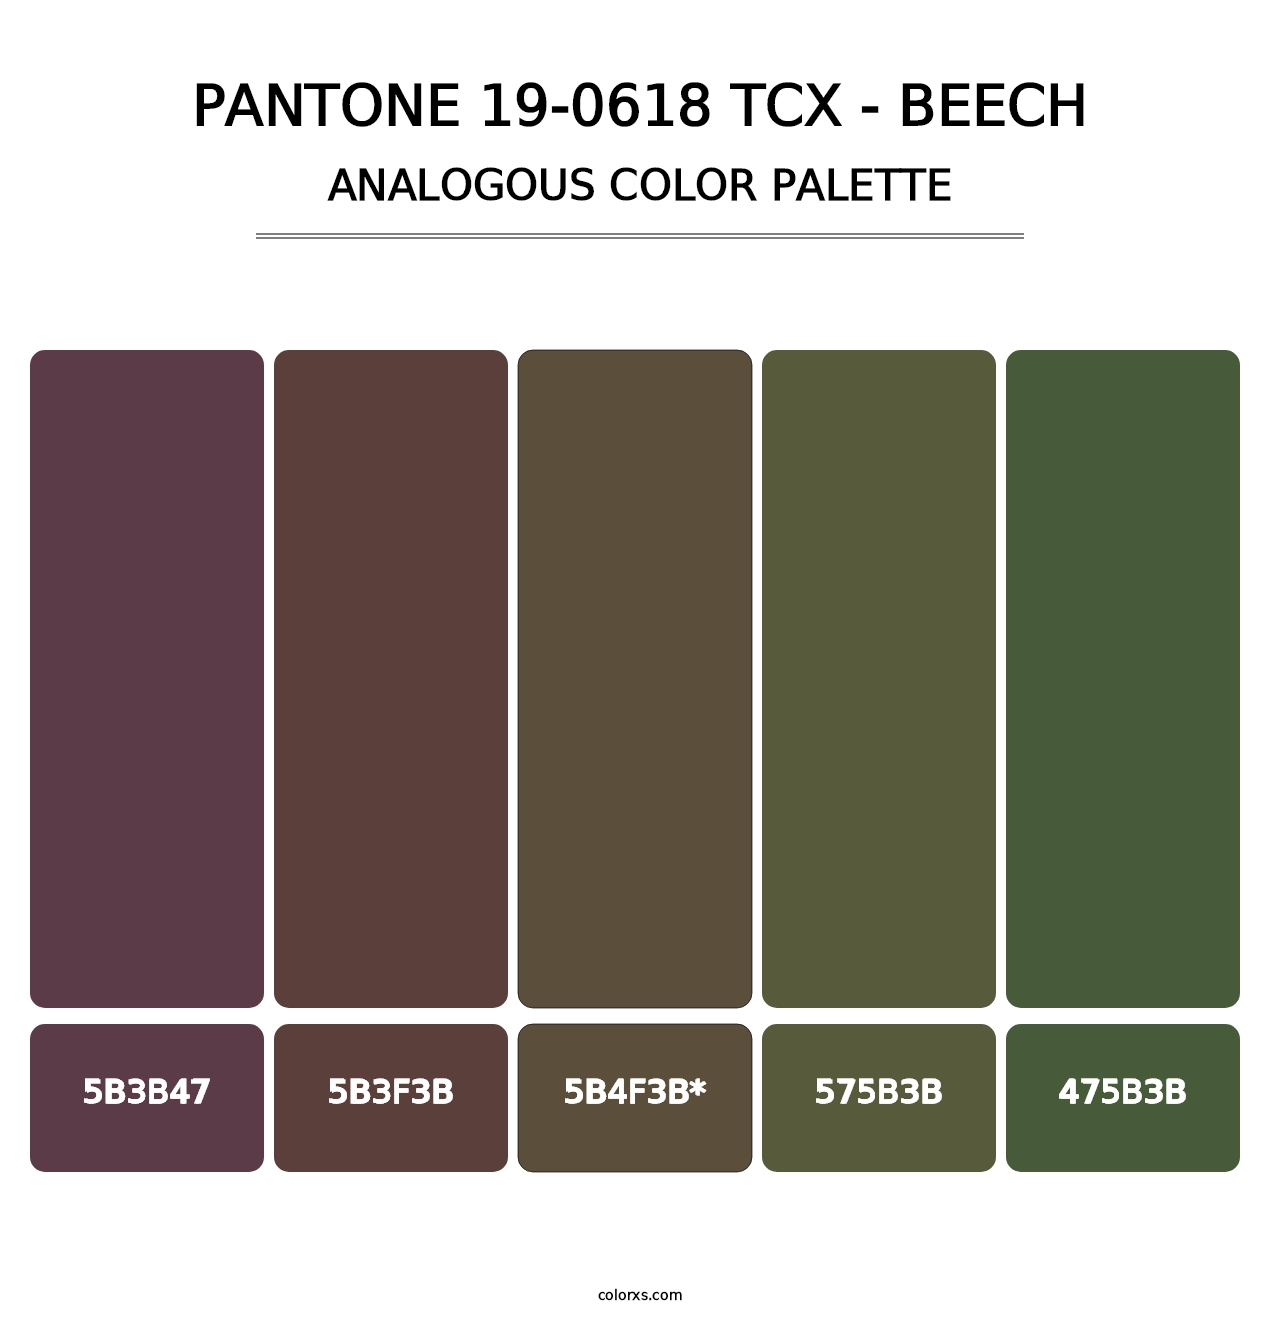 PANTONE 19-0618 TCX - Beech - Analogous Color Palette